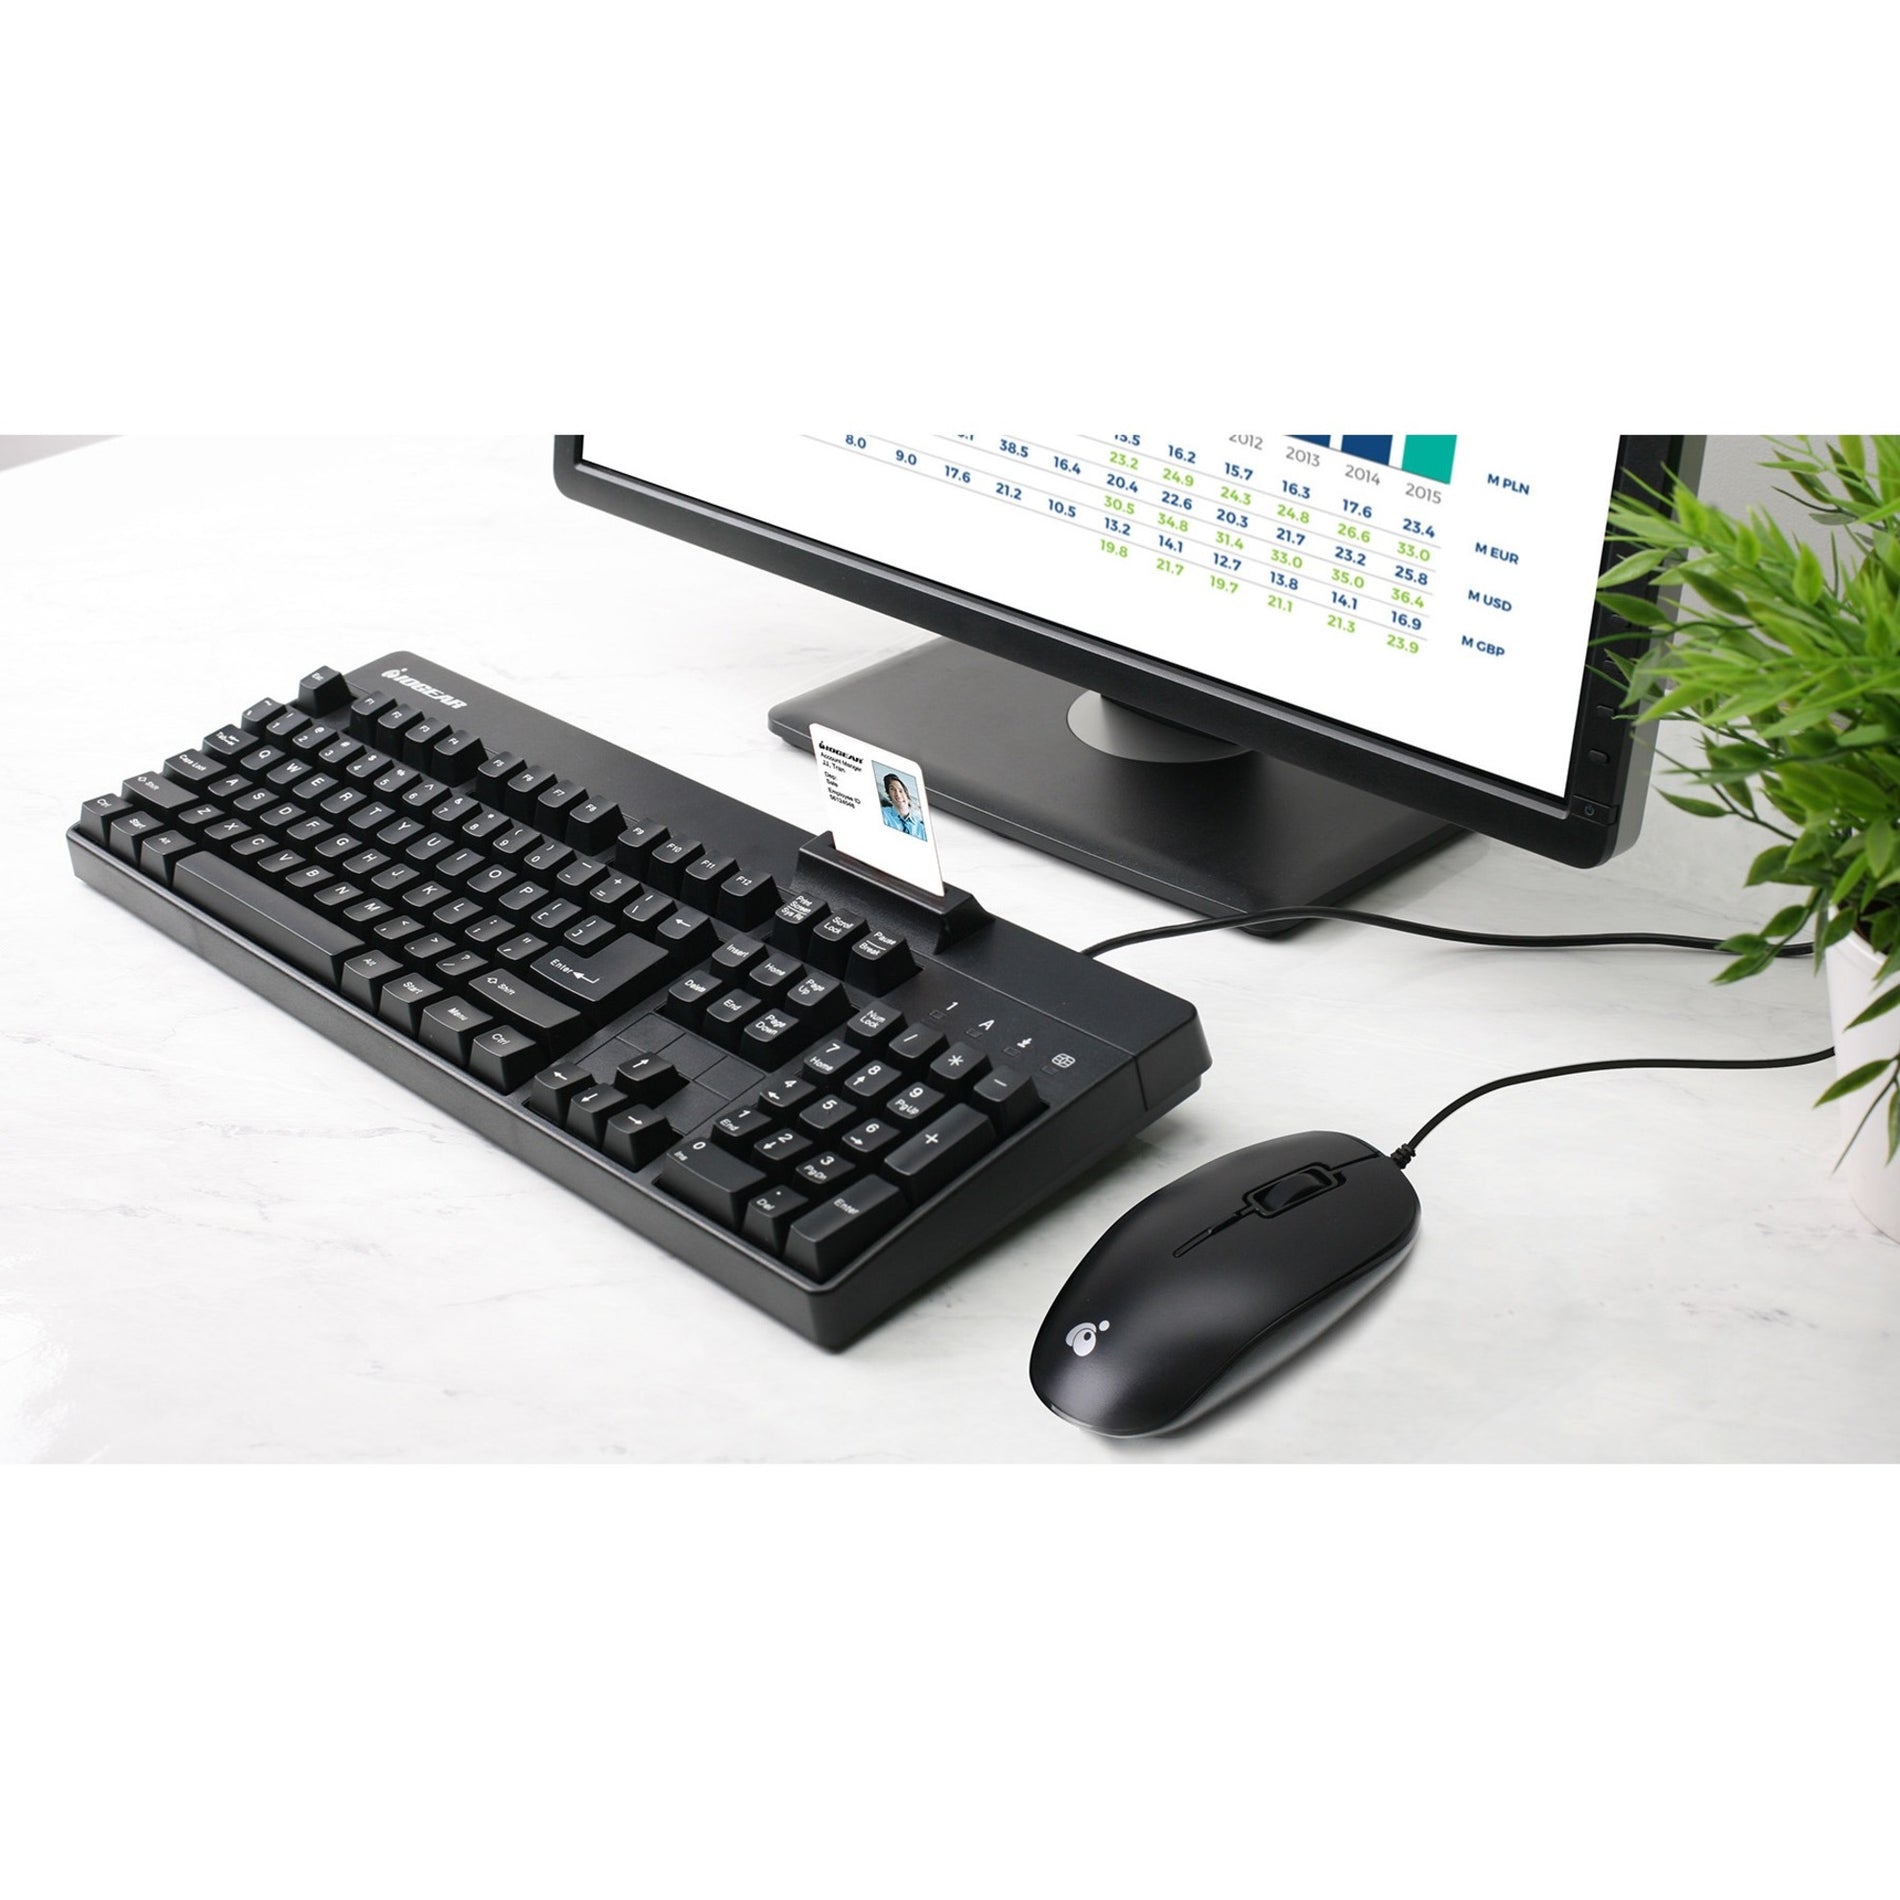 IOGEAR GKBSR202TAAKIT Keyboard & Mouse, Full-size, USB 2.0, 1 Year Warranty